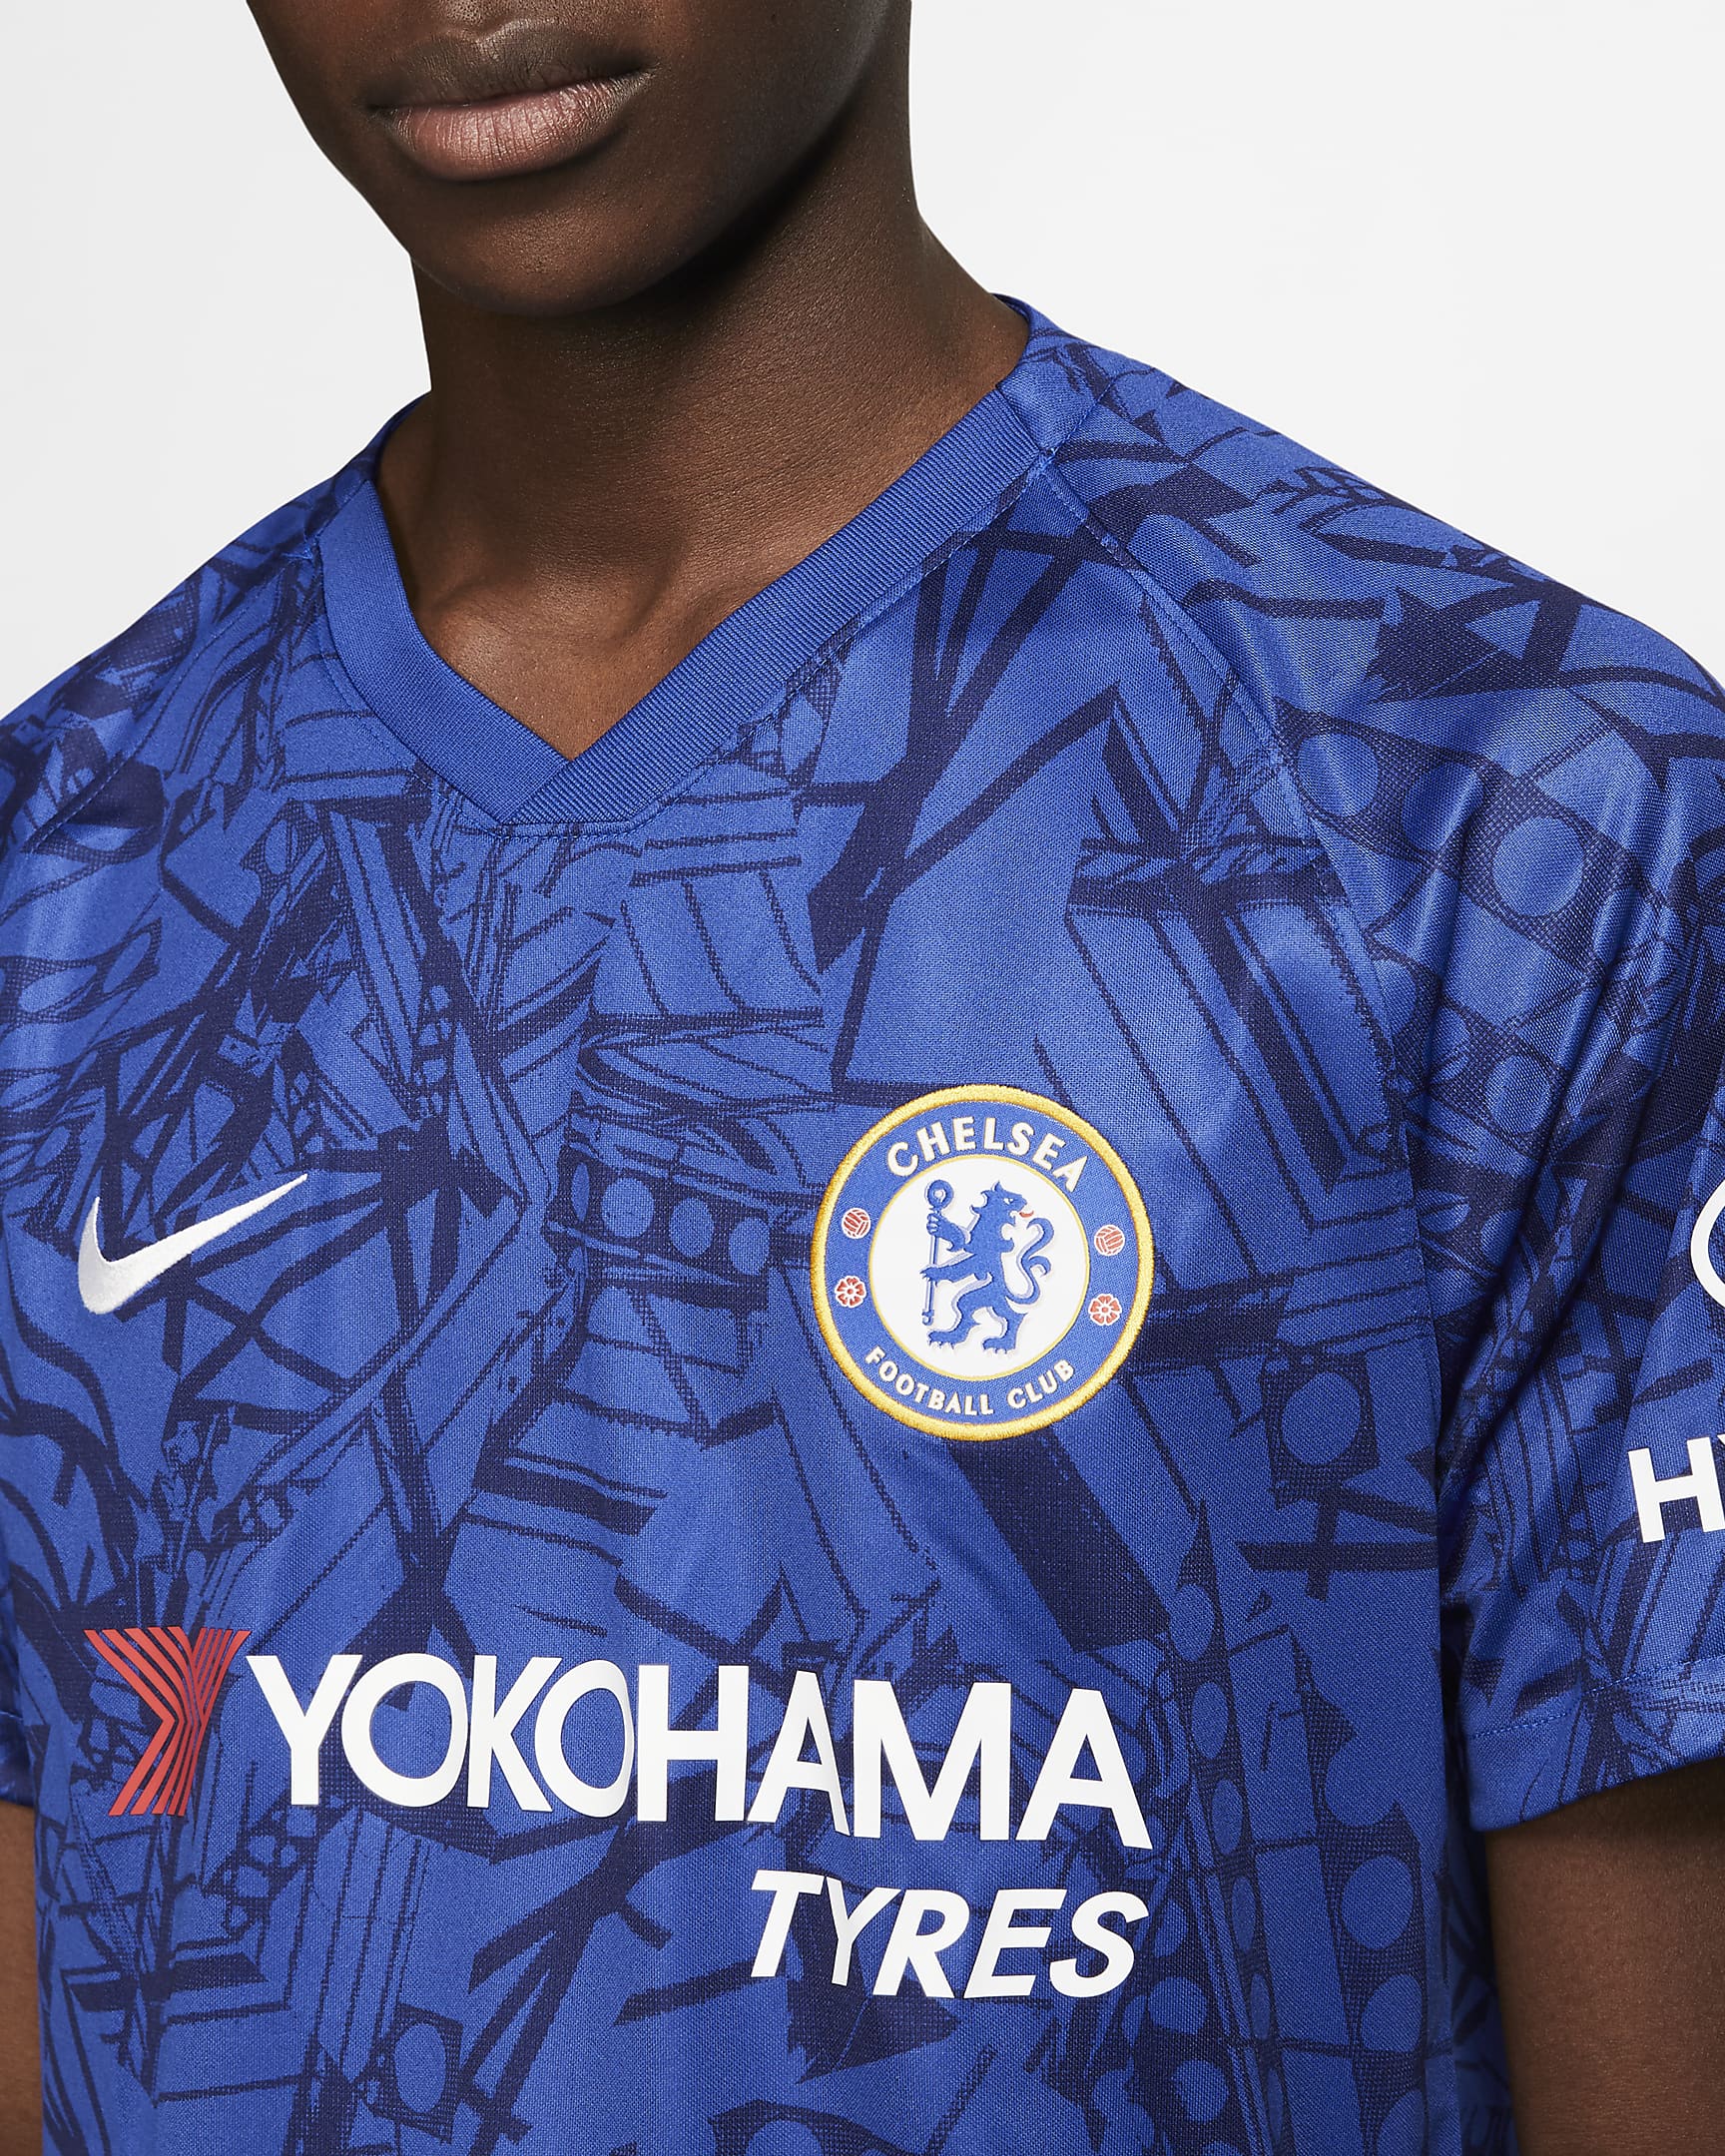 Chelsea F.C. 2019/20 Stadium Home Men's Football Shirt. Nike BG